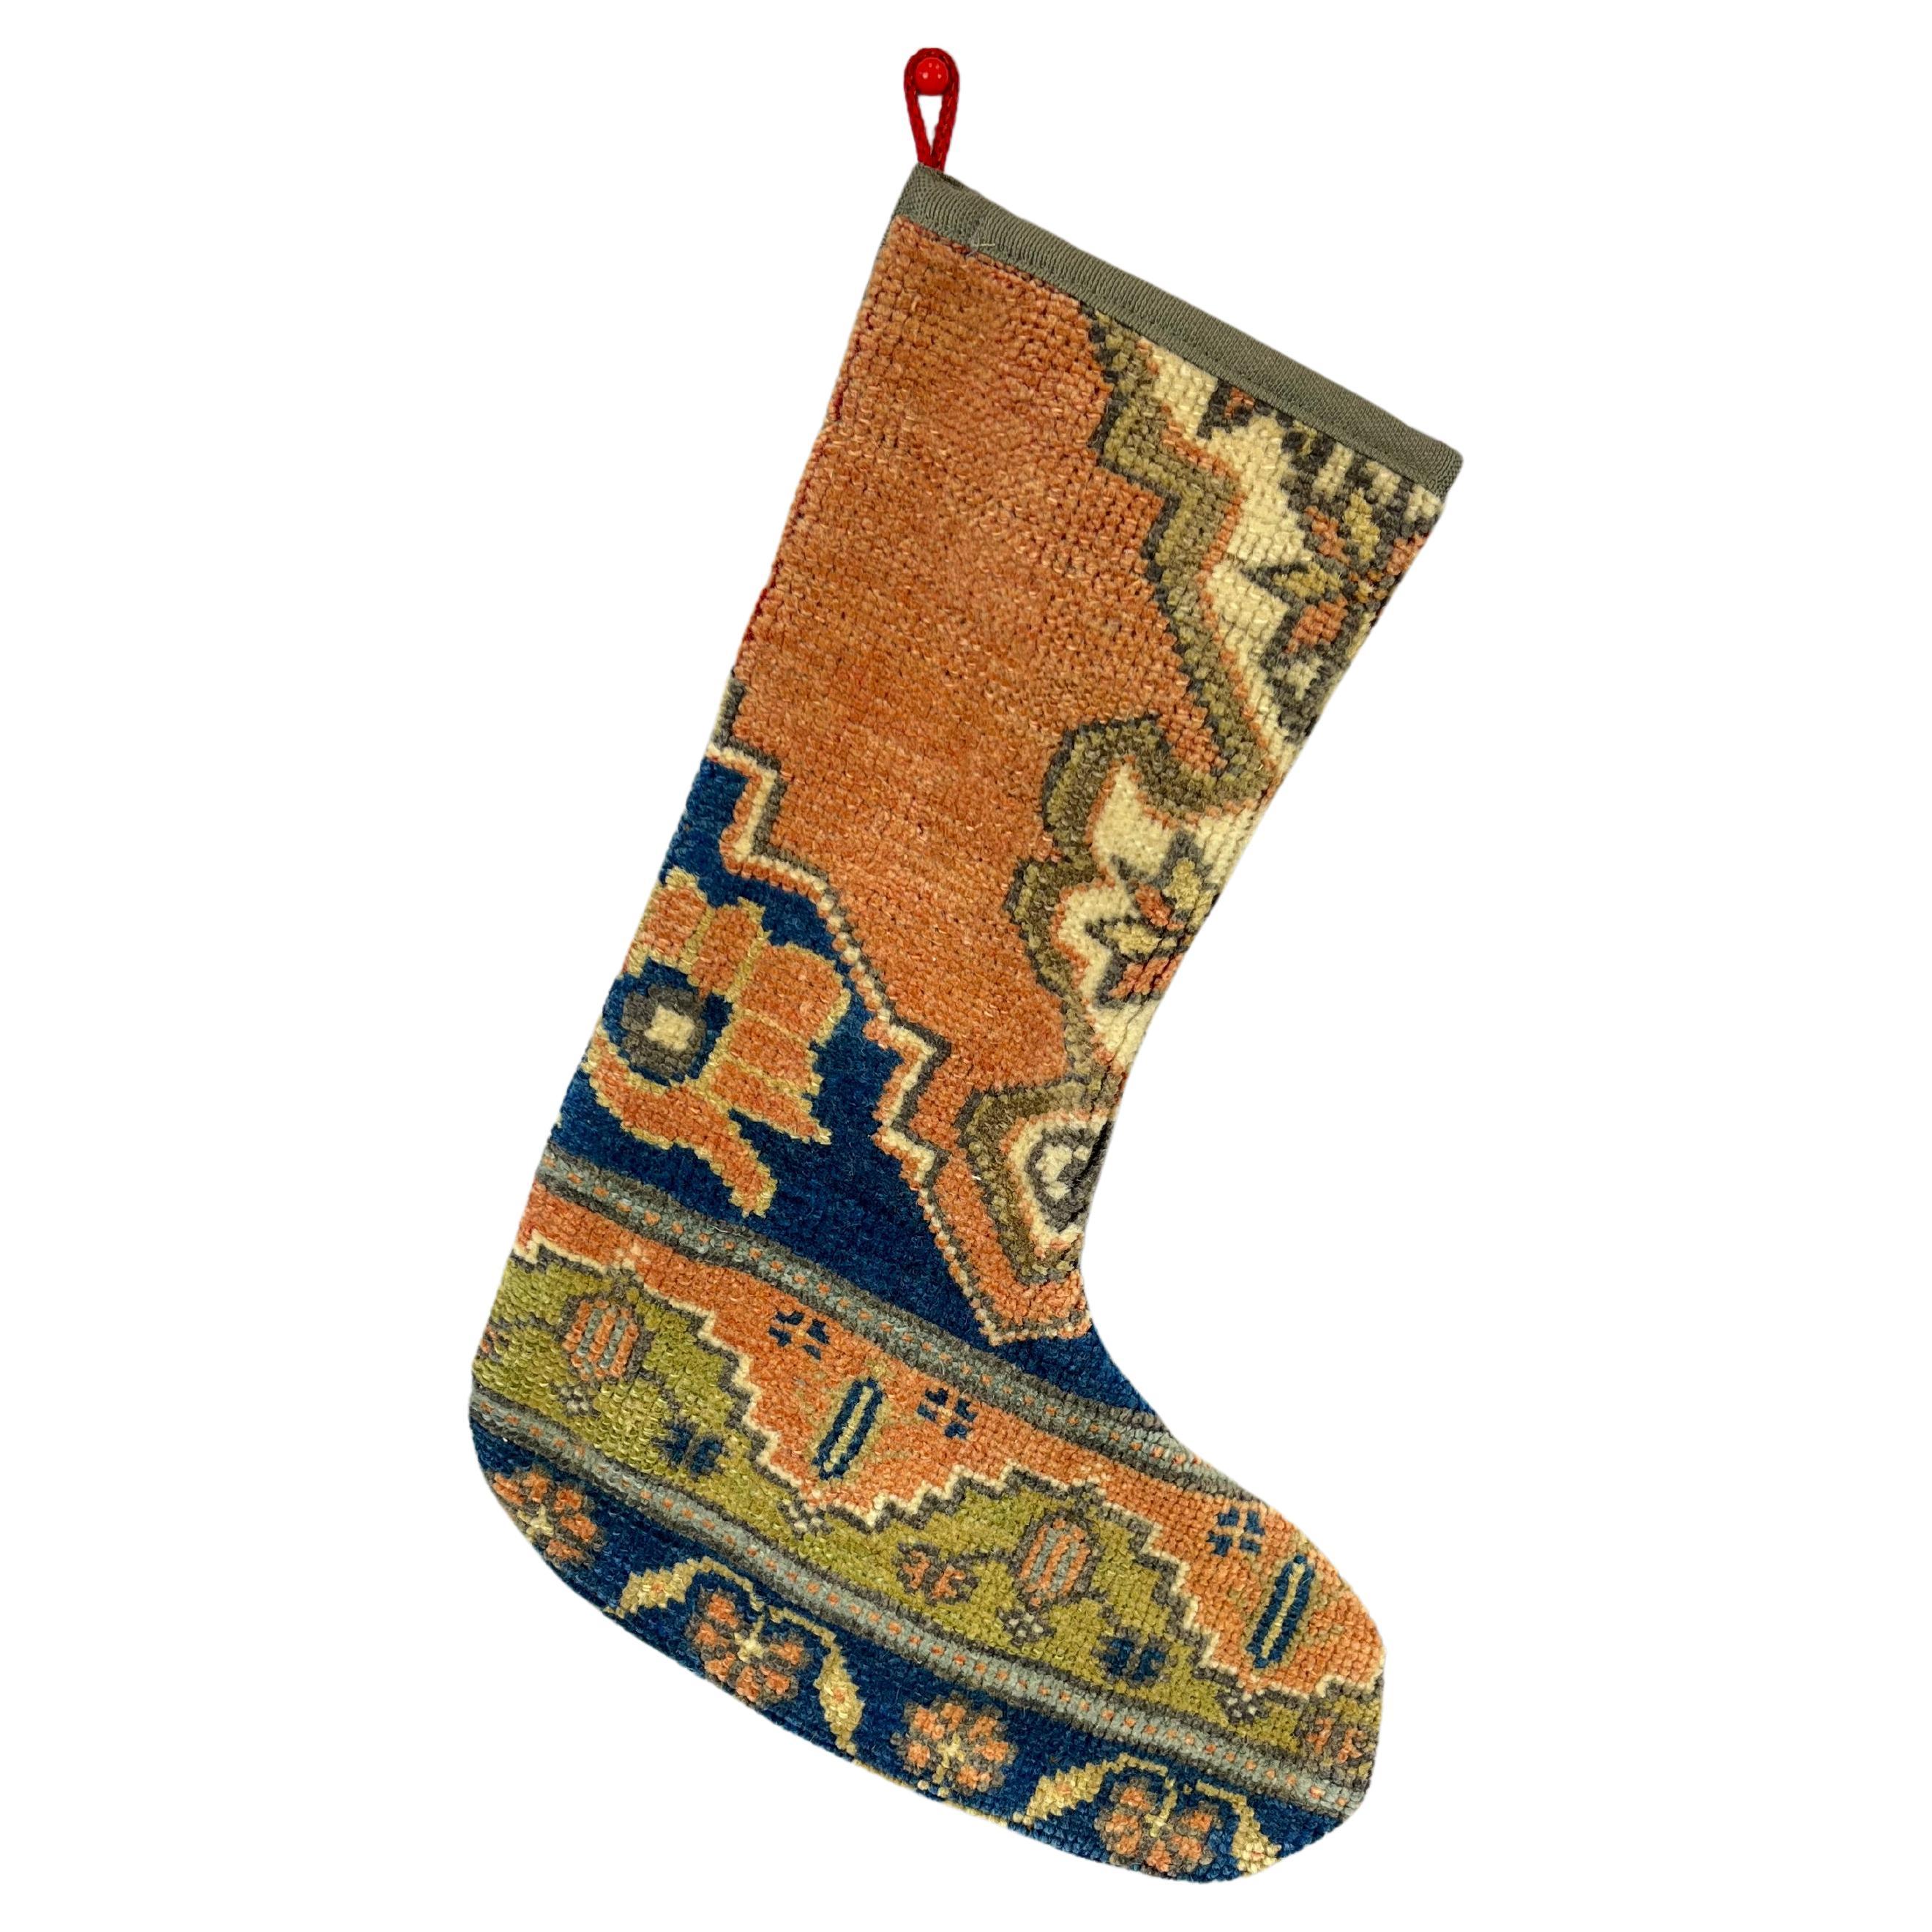 Handgefertigter türkischer Teppich, Weihnachts Stocking, Vintage